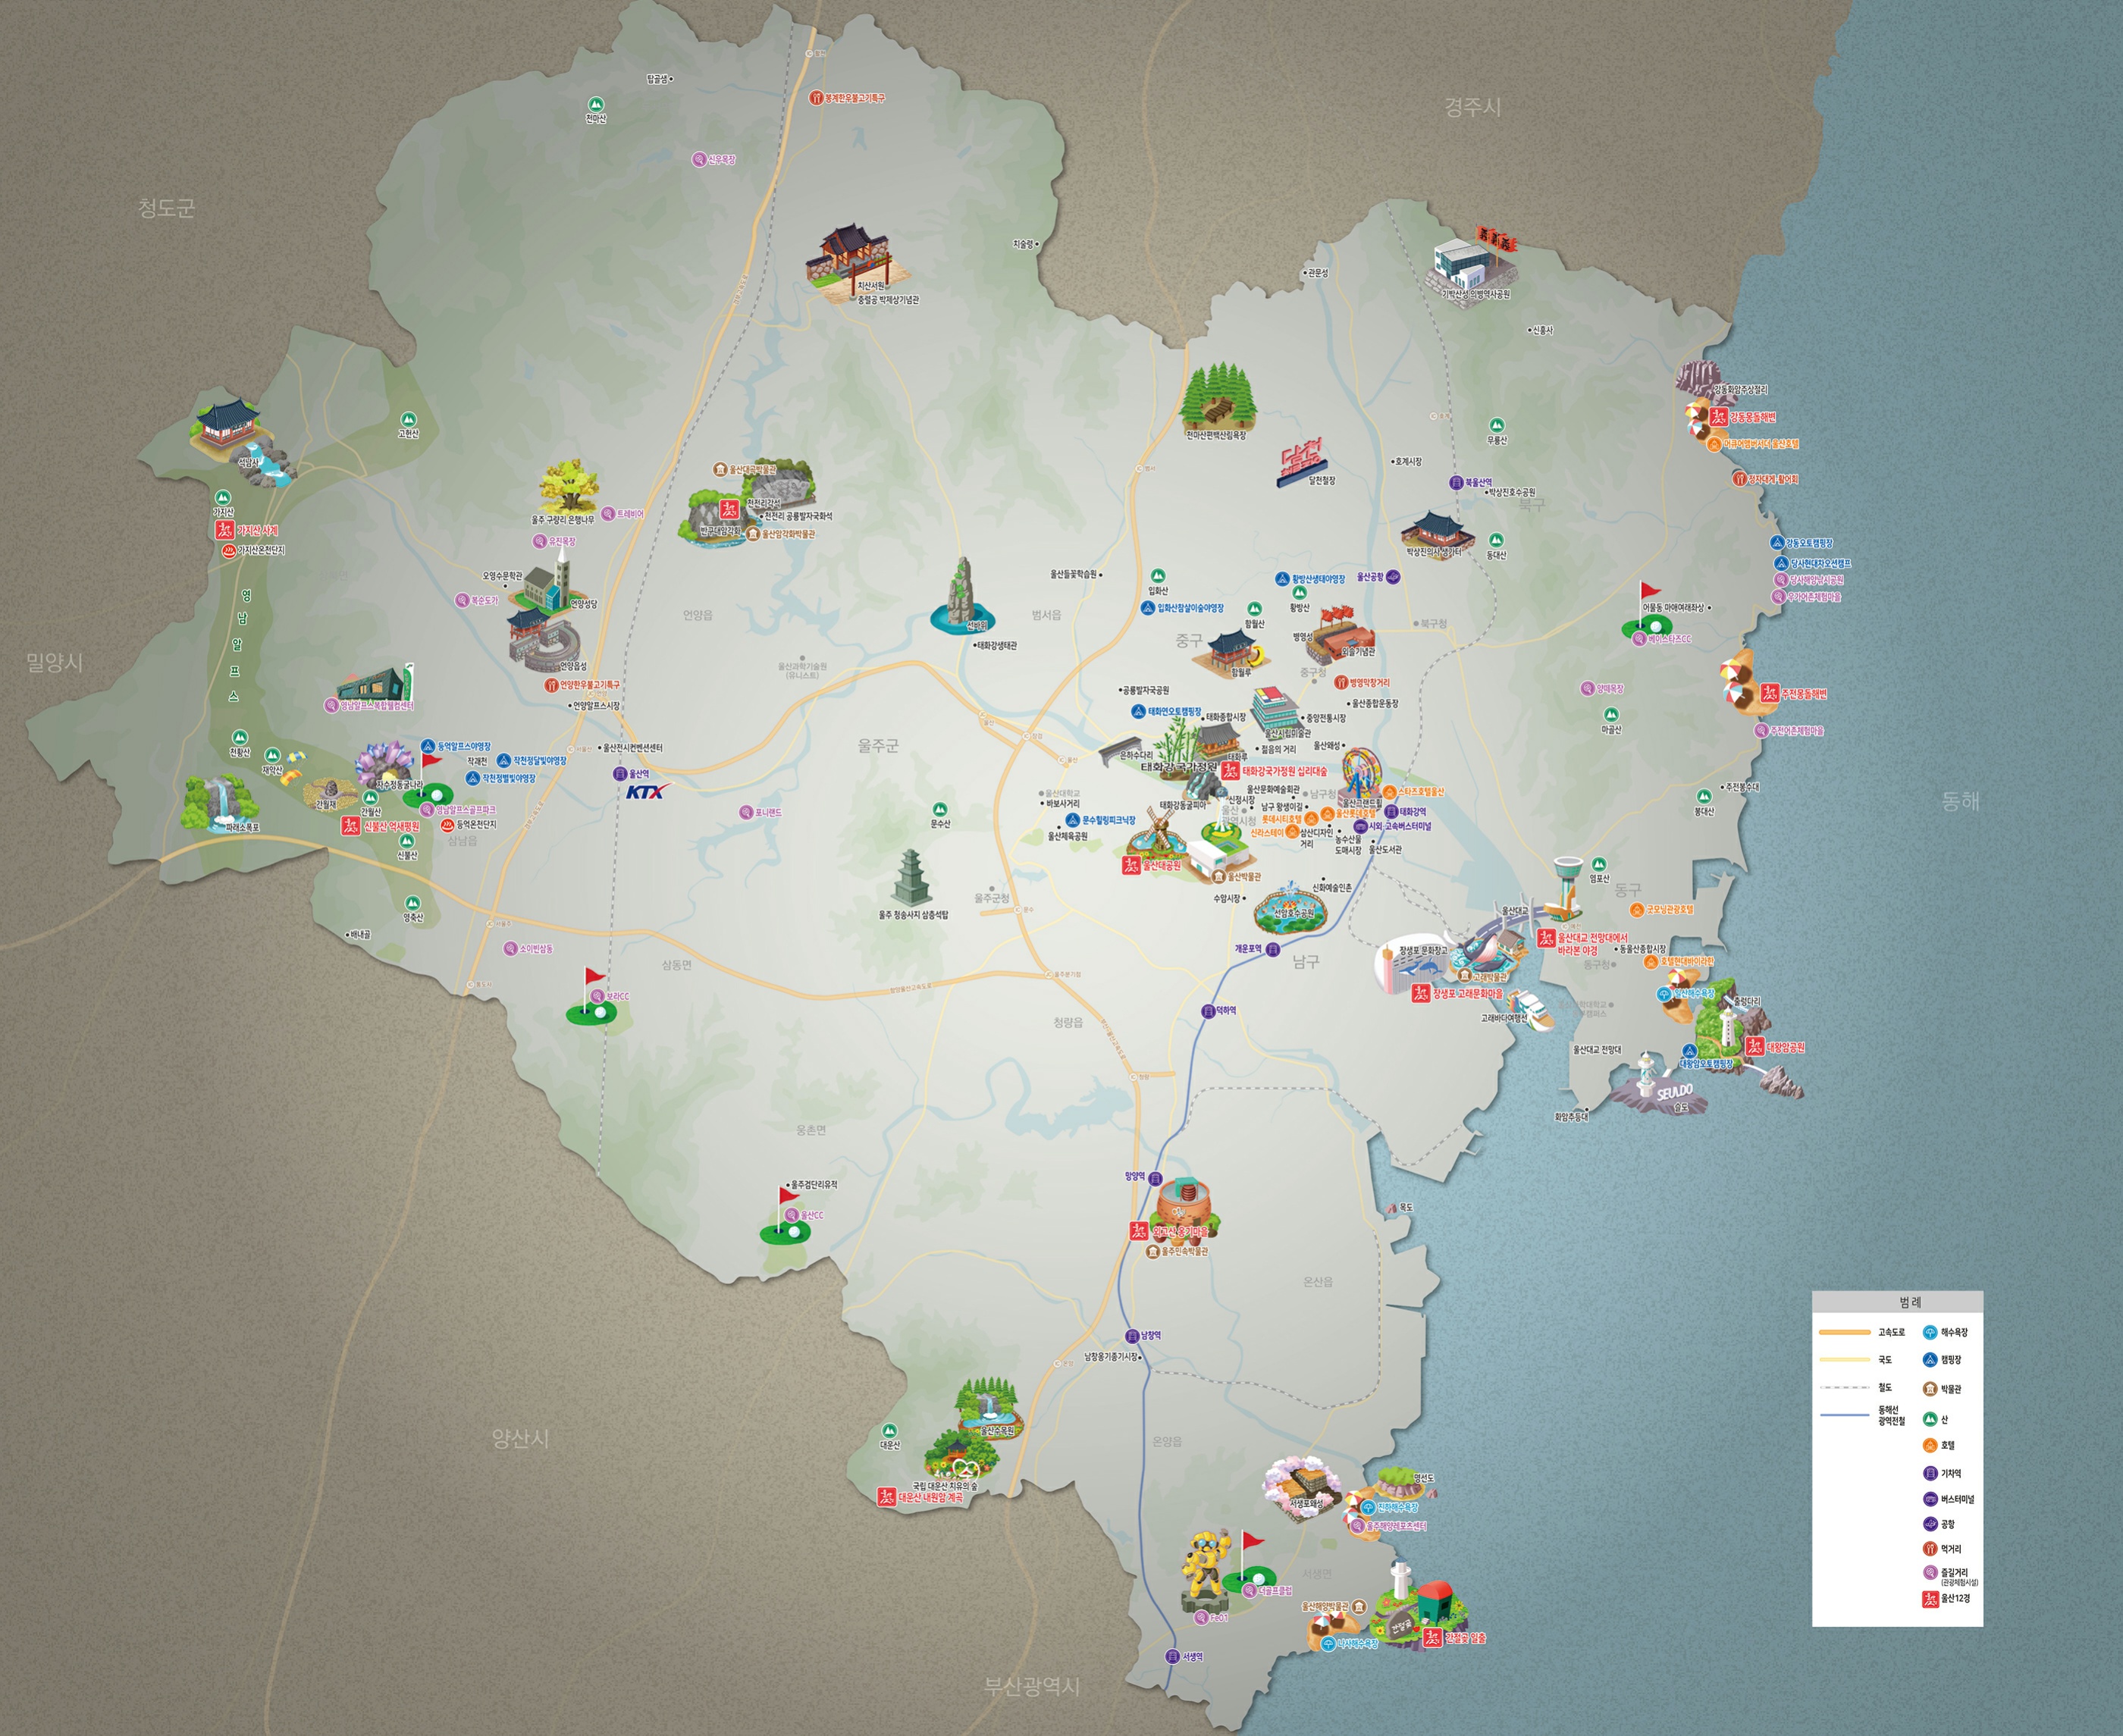 울산의 주요관광지가 표시된 일러스트 지도